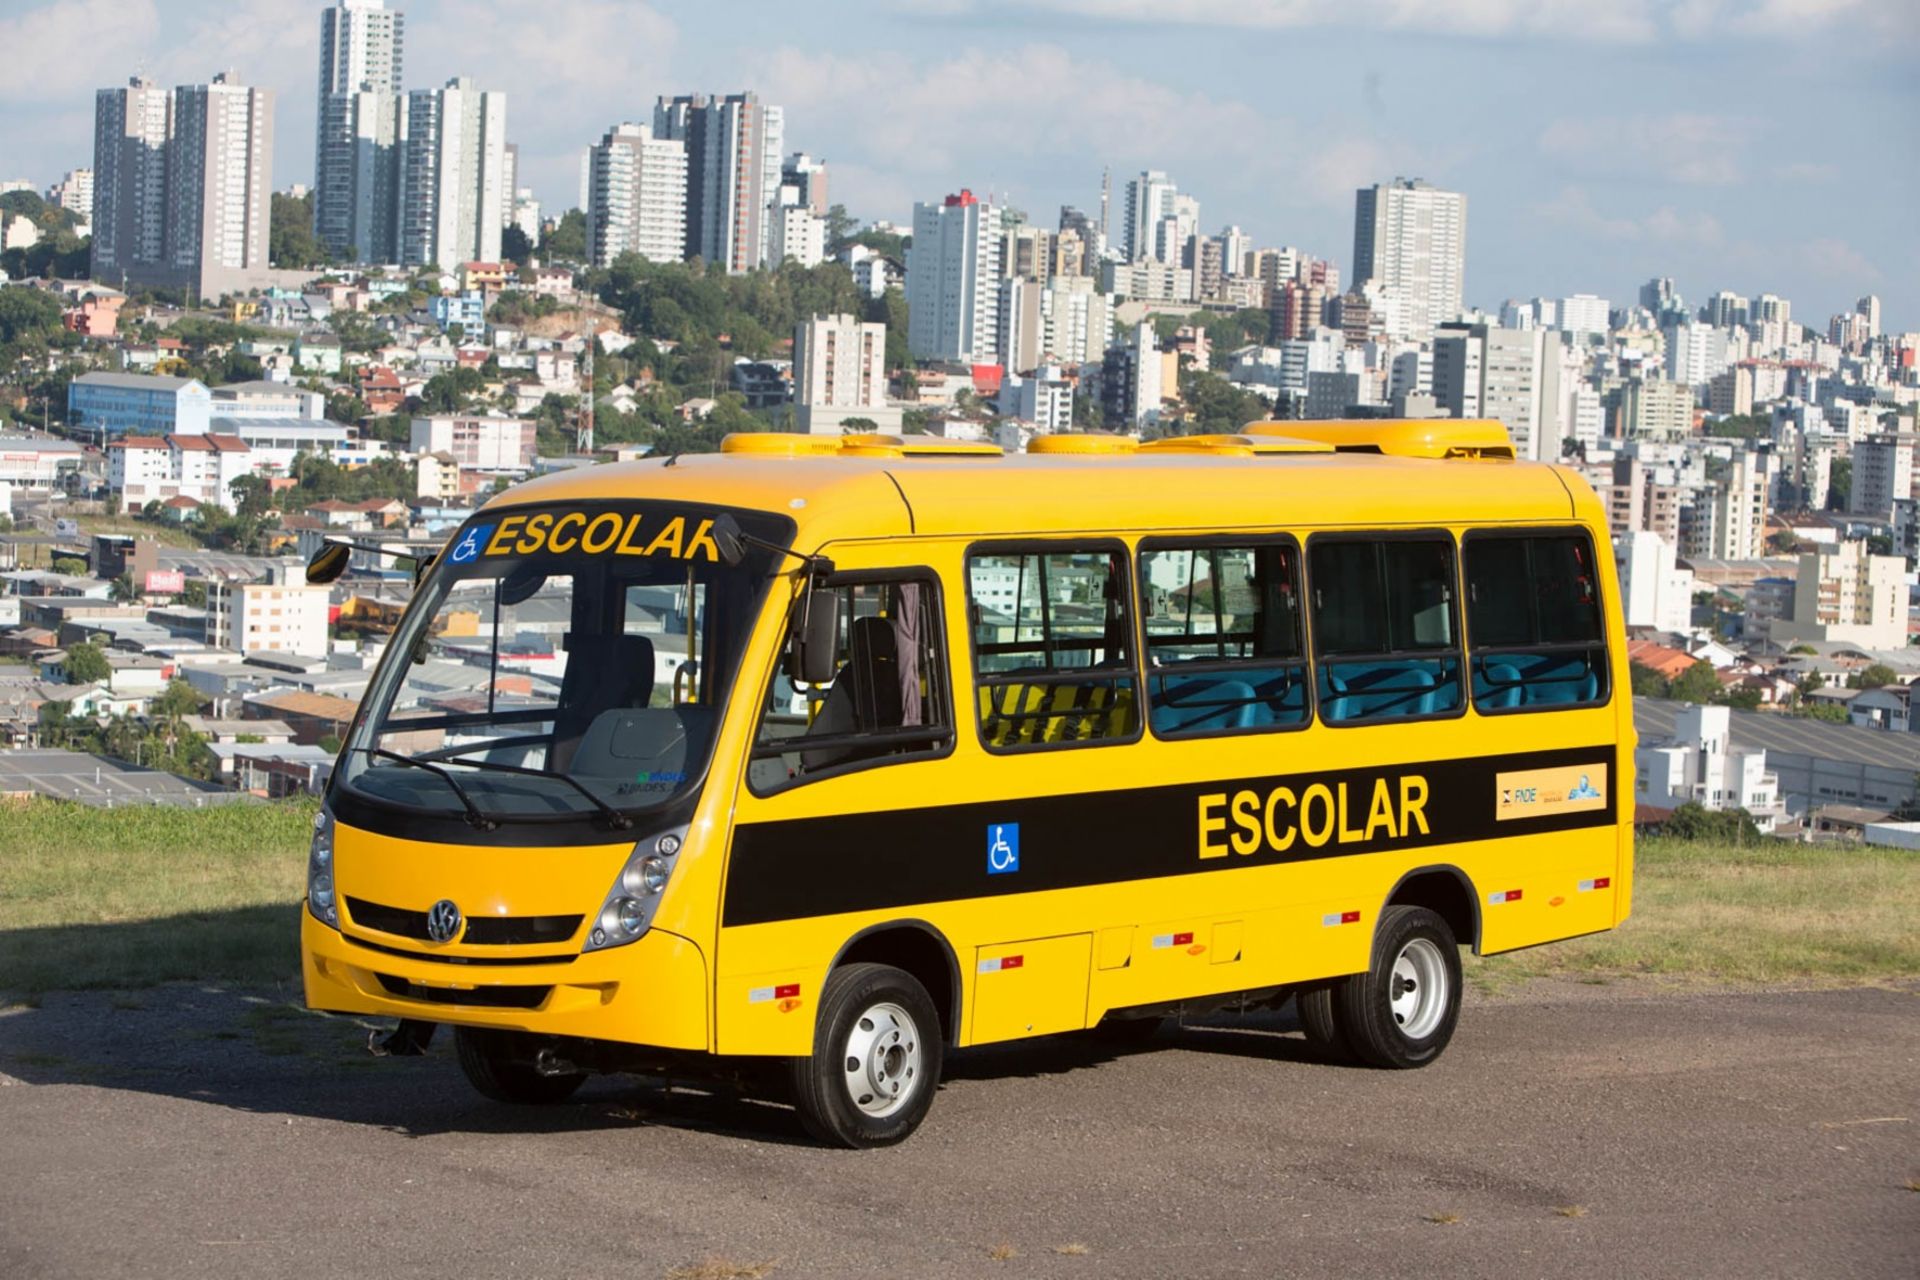 Der Volksbus 8.160 ODR ist das gleiche Modell wie dasjenige, das für die Schulweg-Initiative (Caminho da Escola) verwendet wird, ein ländliches Verkehrsprogramm, das seit seinem Start im Jahr 2007 große Erfolge verzeichnet; fast 18.000 VWCO-Fahrzeuge bringen jährlich rund 4 Millionen Schüler in die Schule.
                 